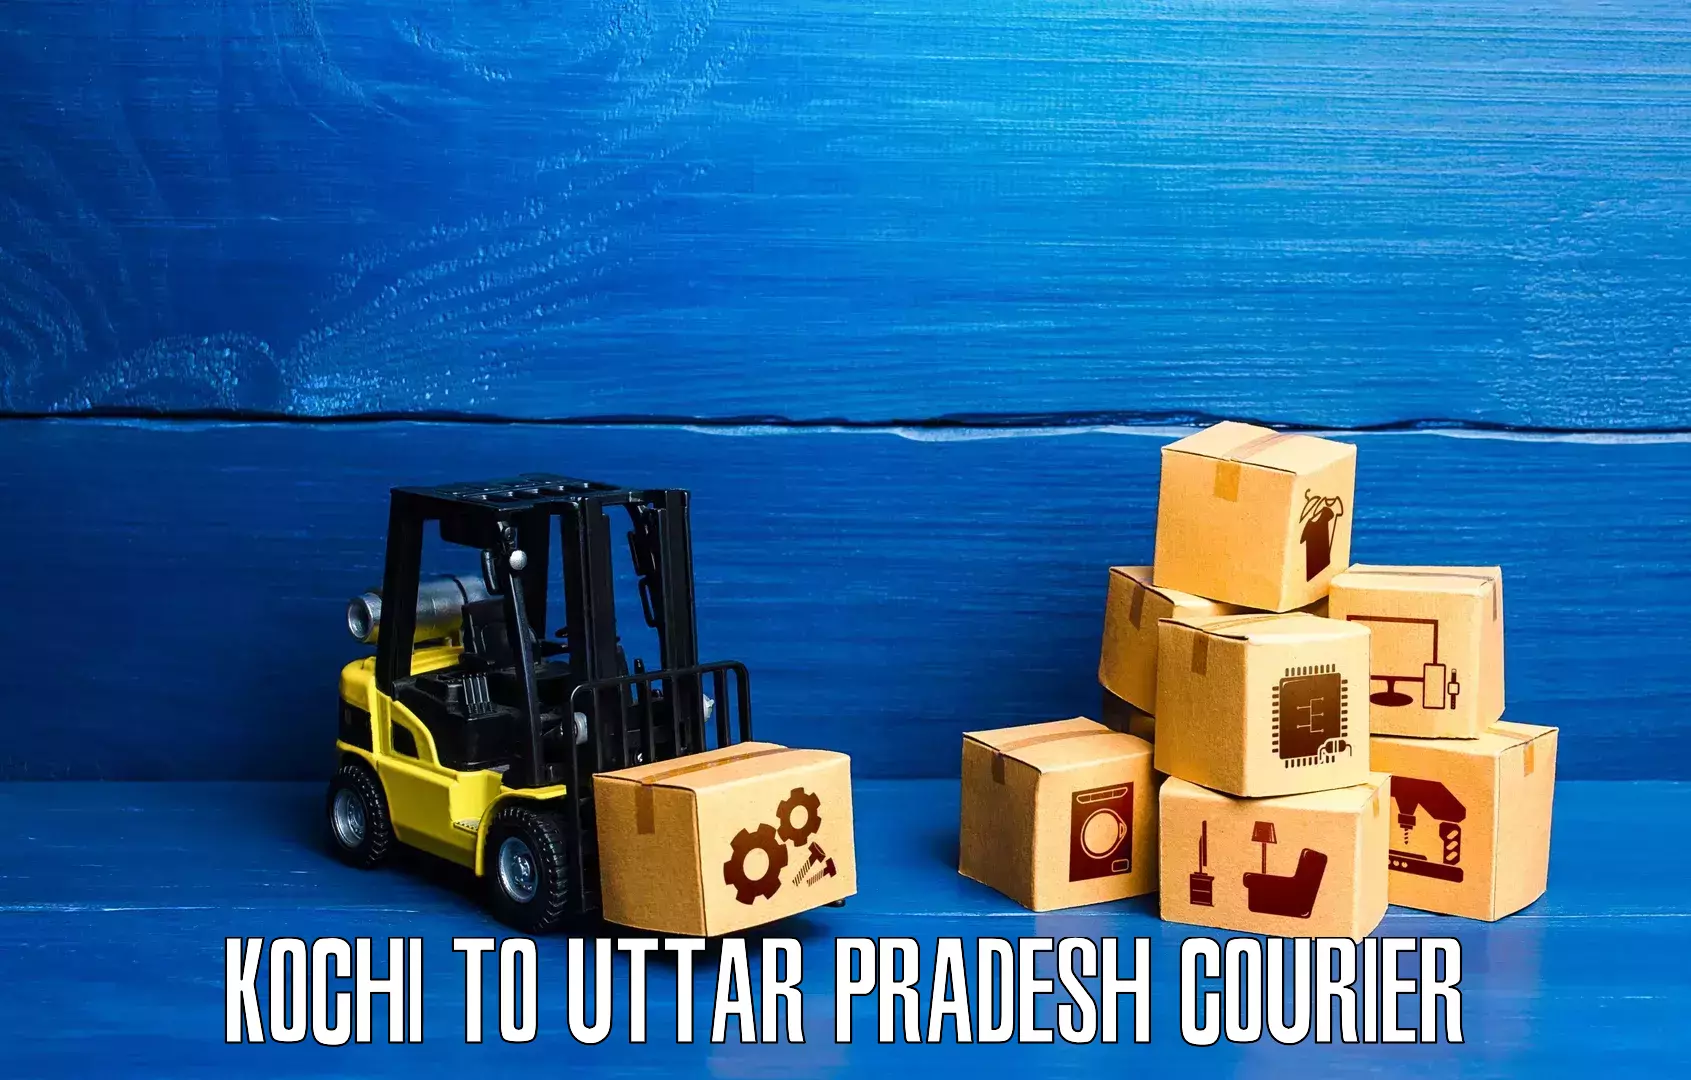 24/7 shipping services Kochi to Uttar Pradesh